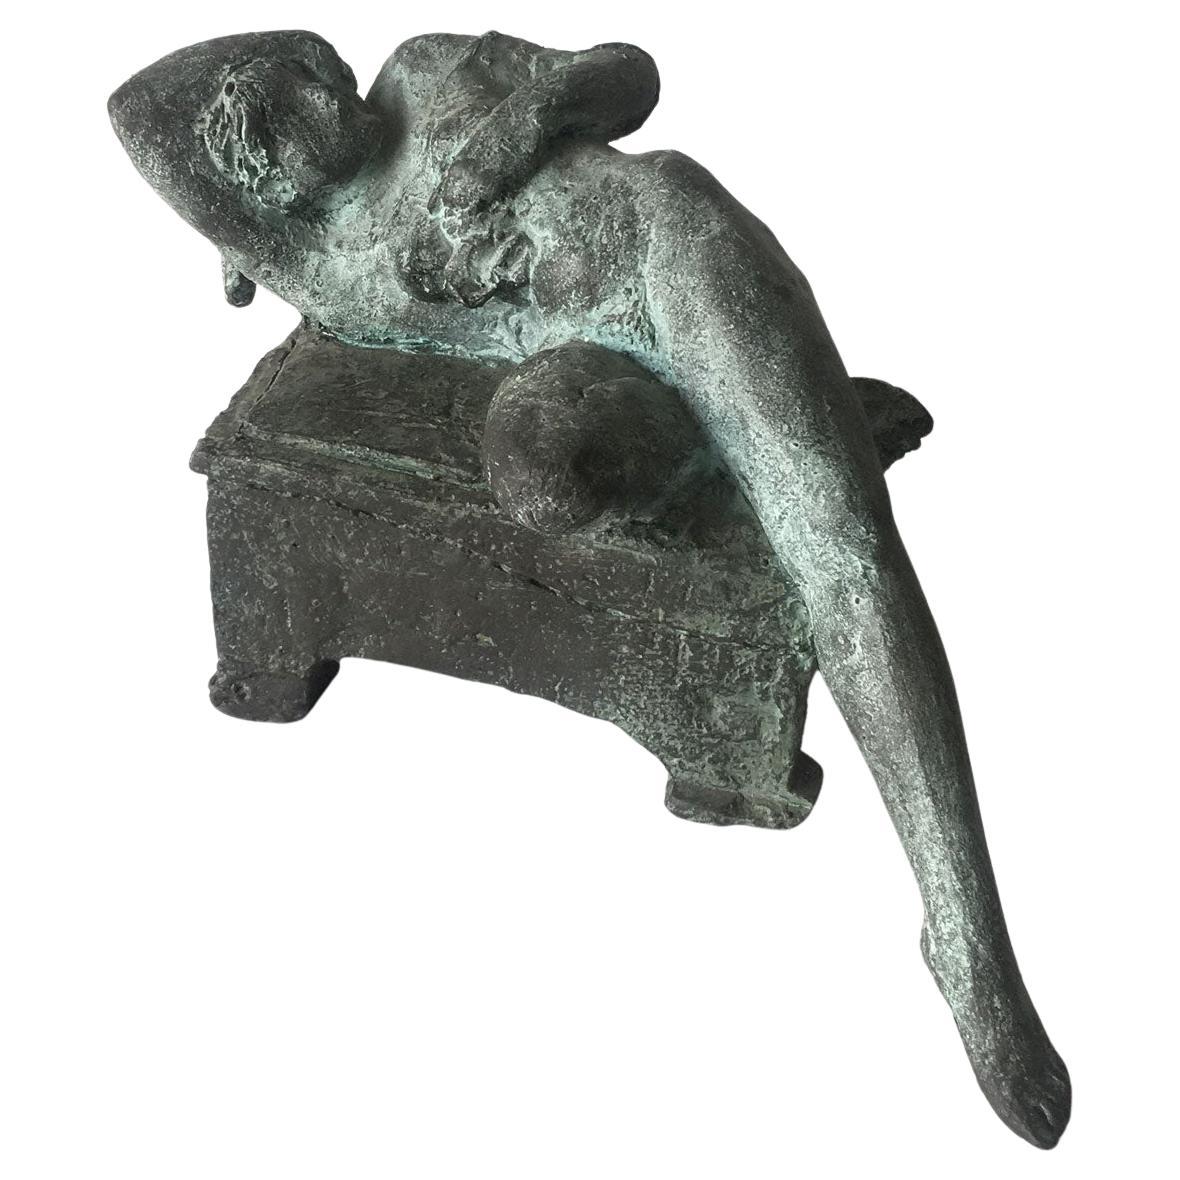 2006 Italy Bronze Sculpture by Ugo Riva Con gli Occhi Nelle Stelle For Sale